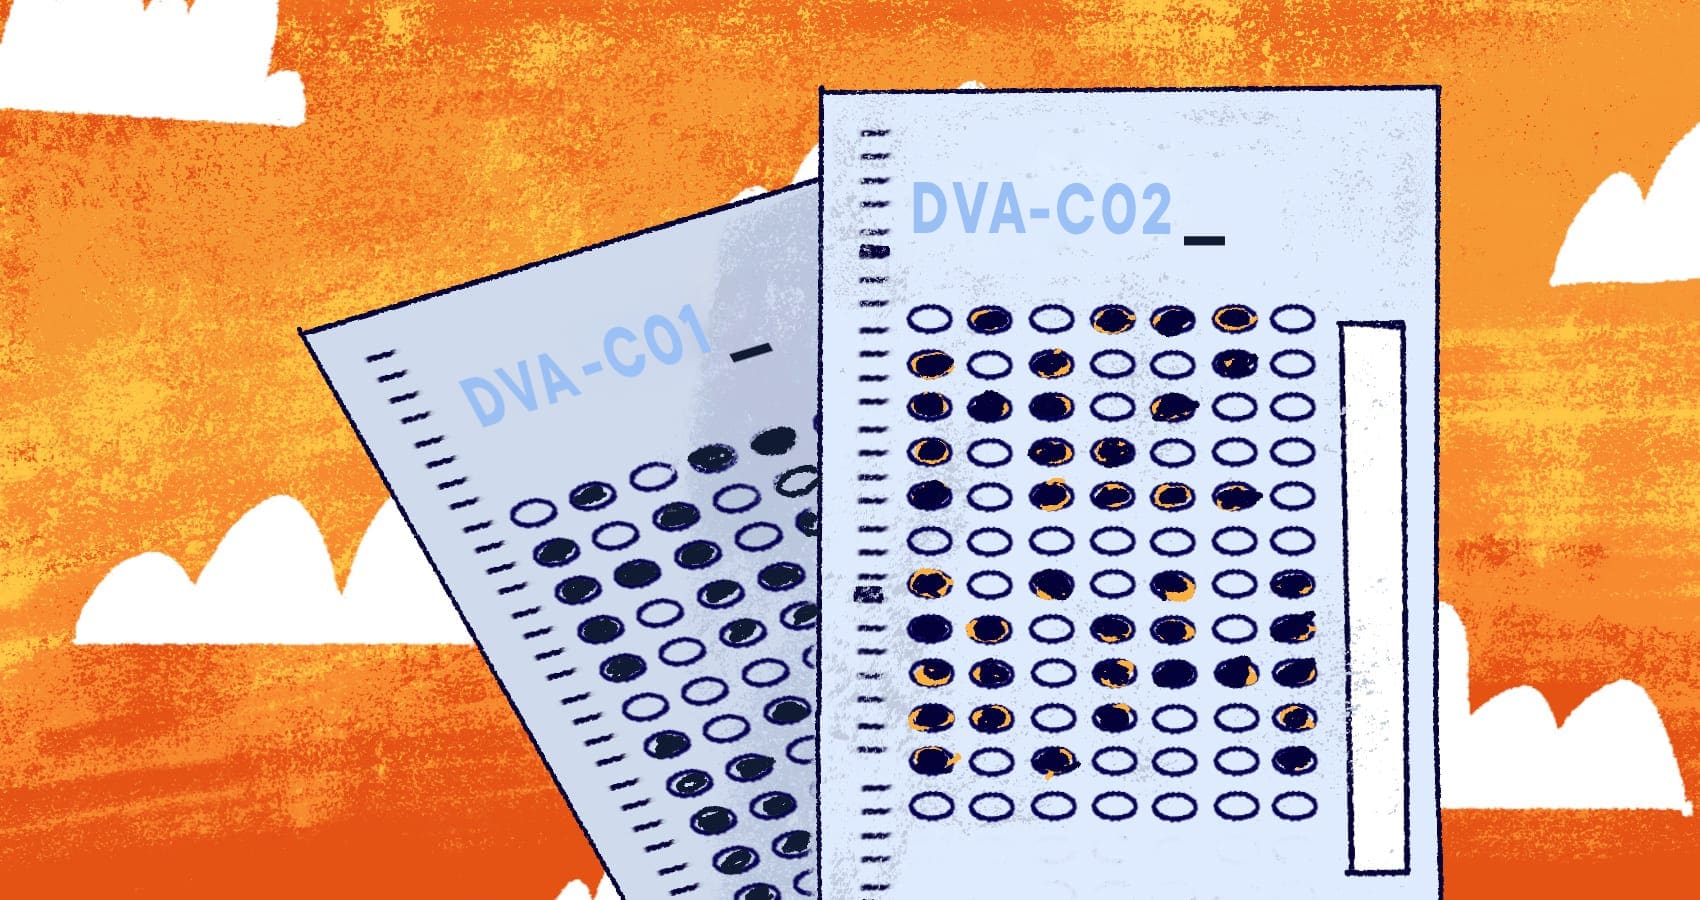 DVA-C02 Demotesten